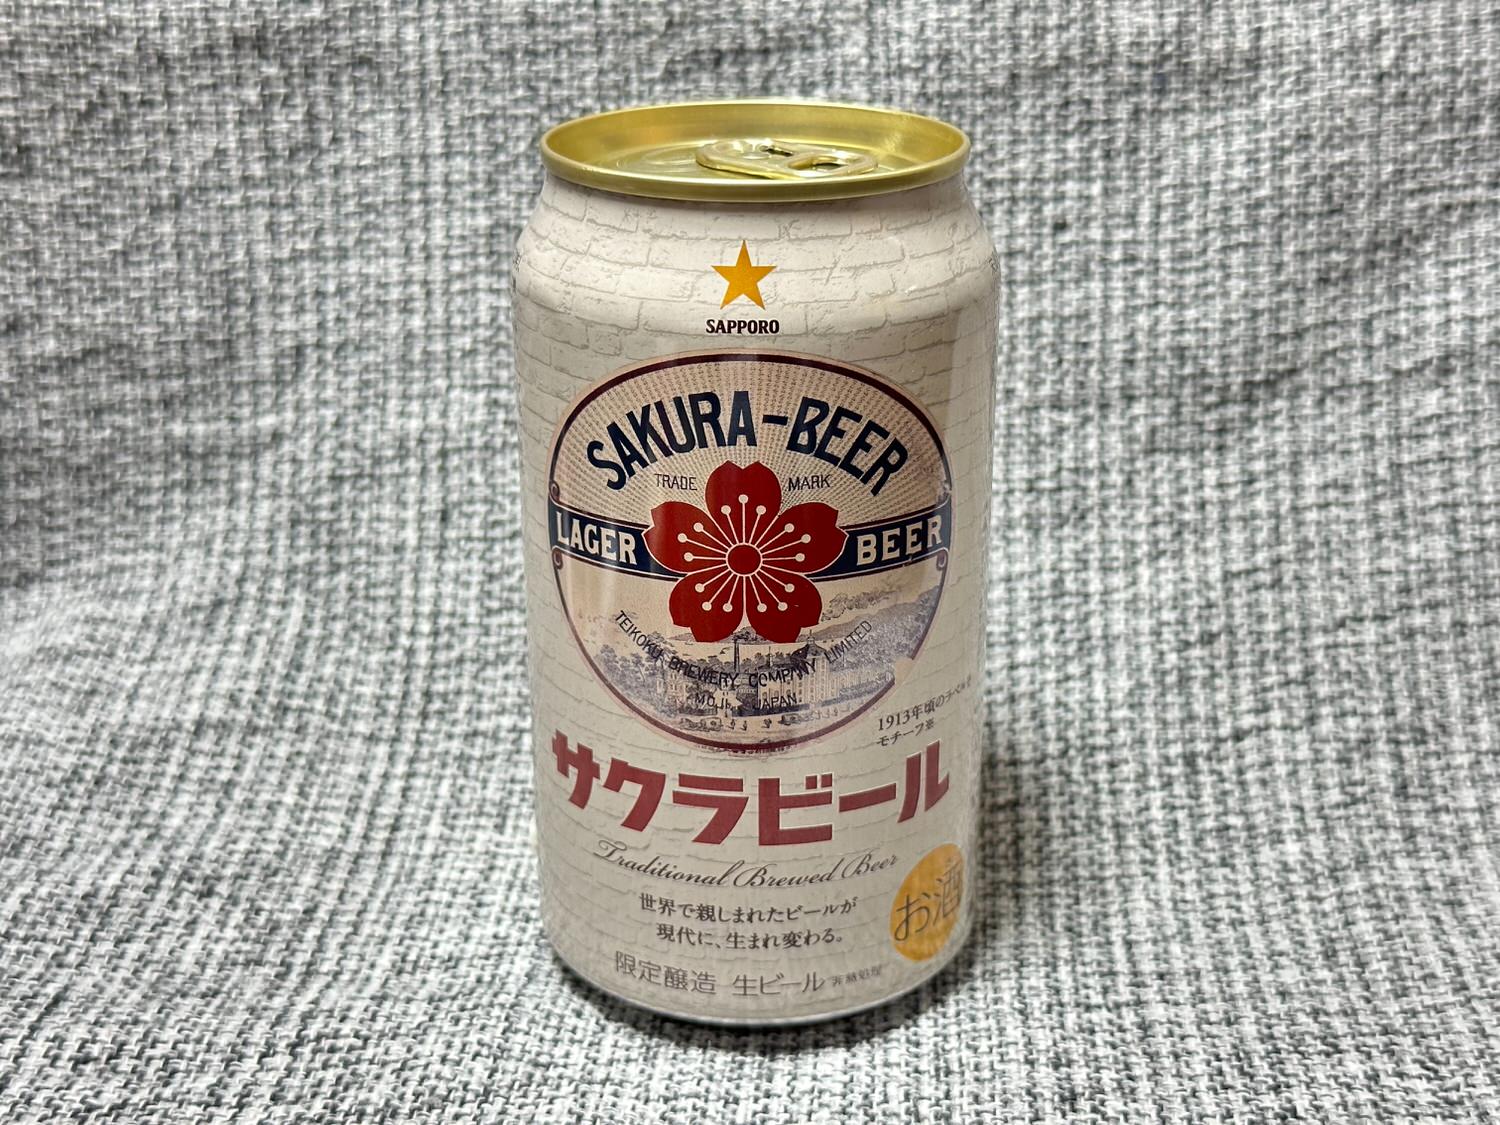 Sakura beer sapporo 001